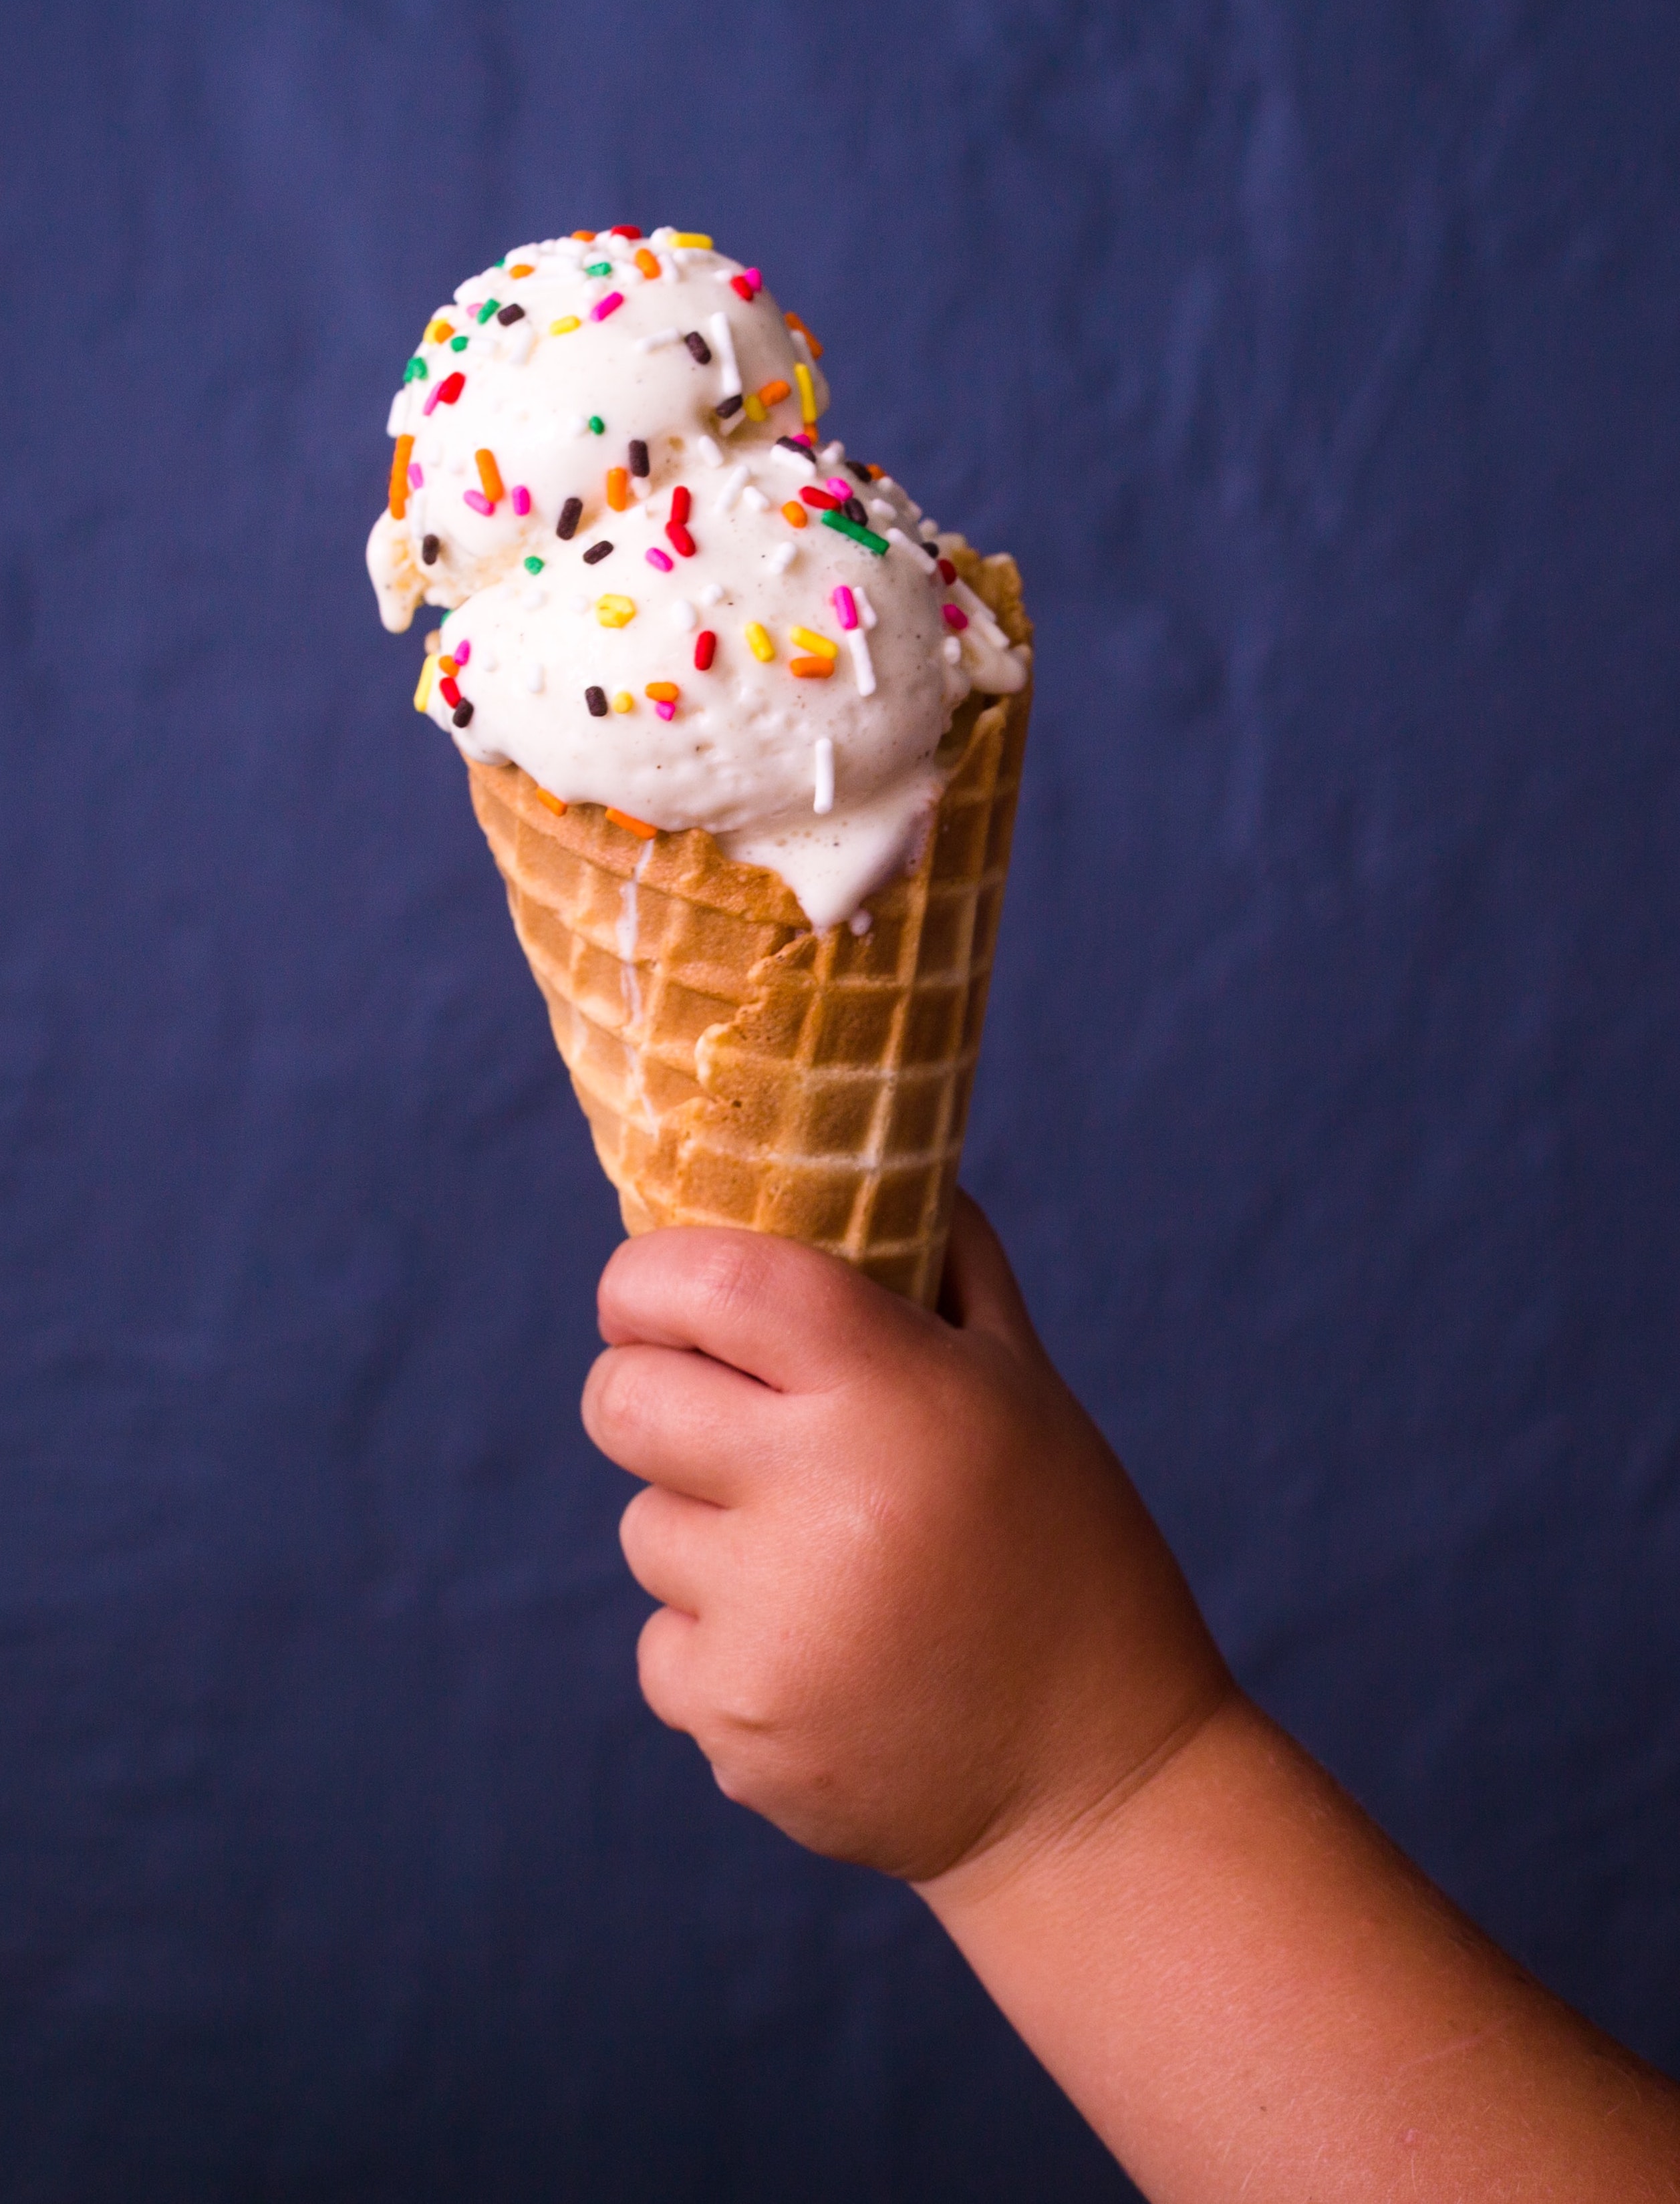 Best Ice Cream Makers #icecream #dessert #kitchen